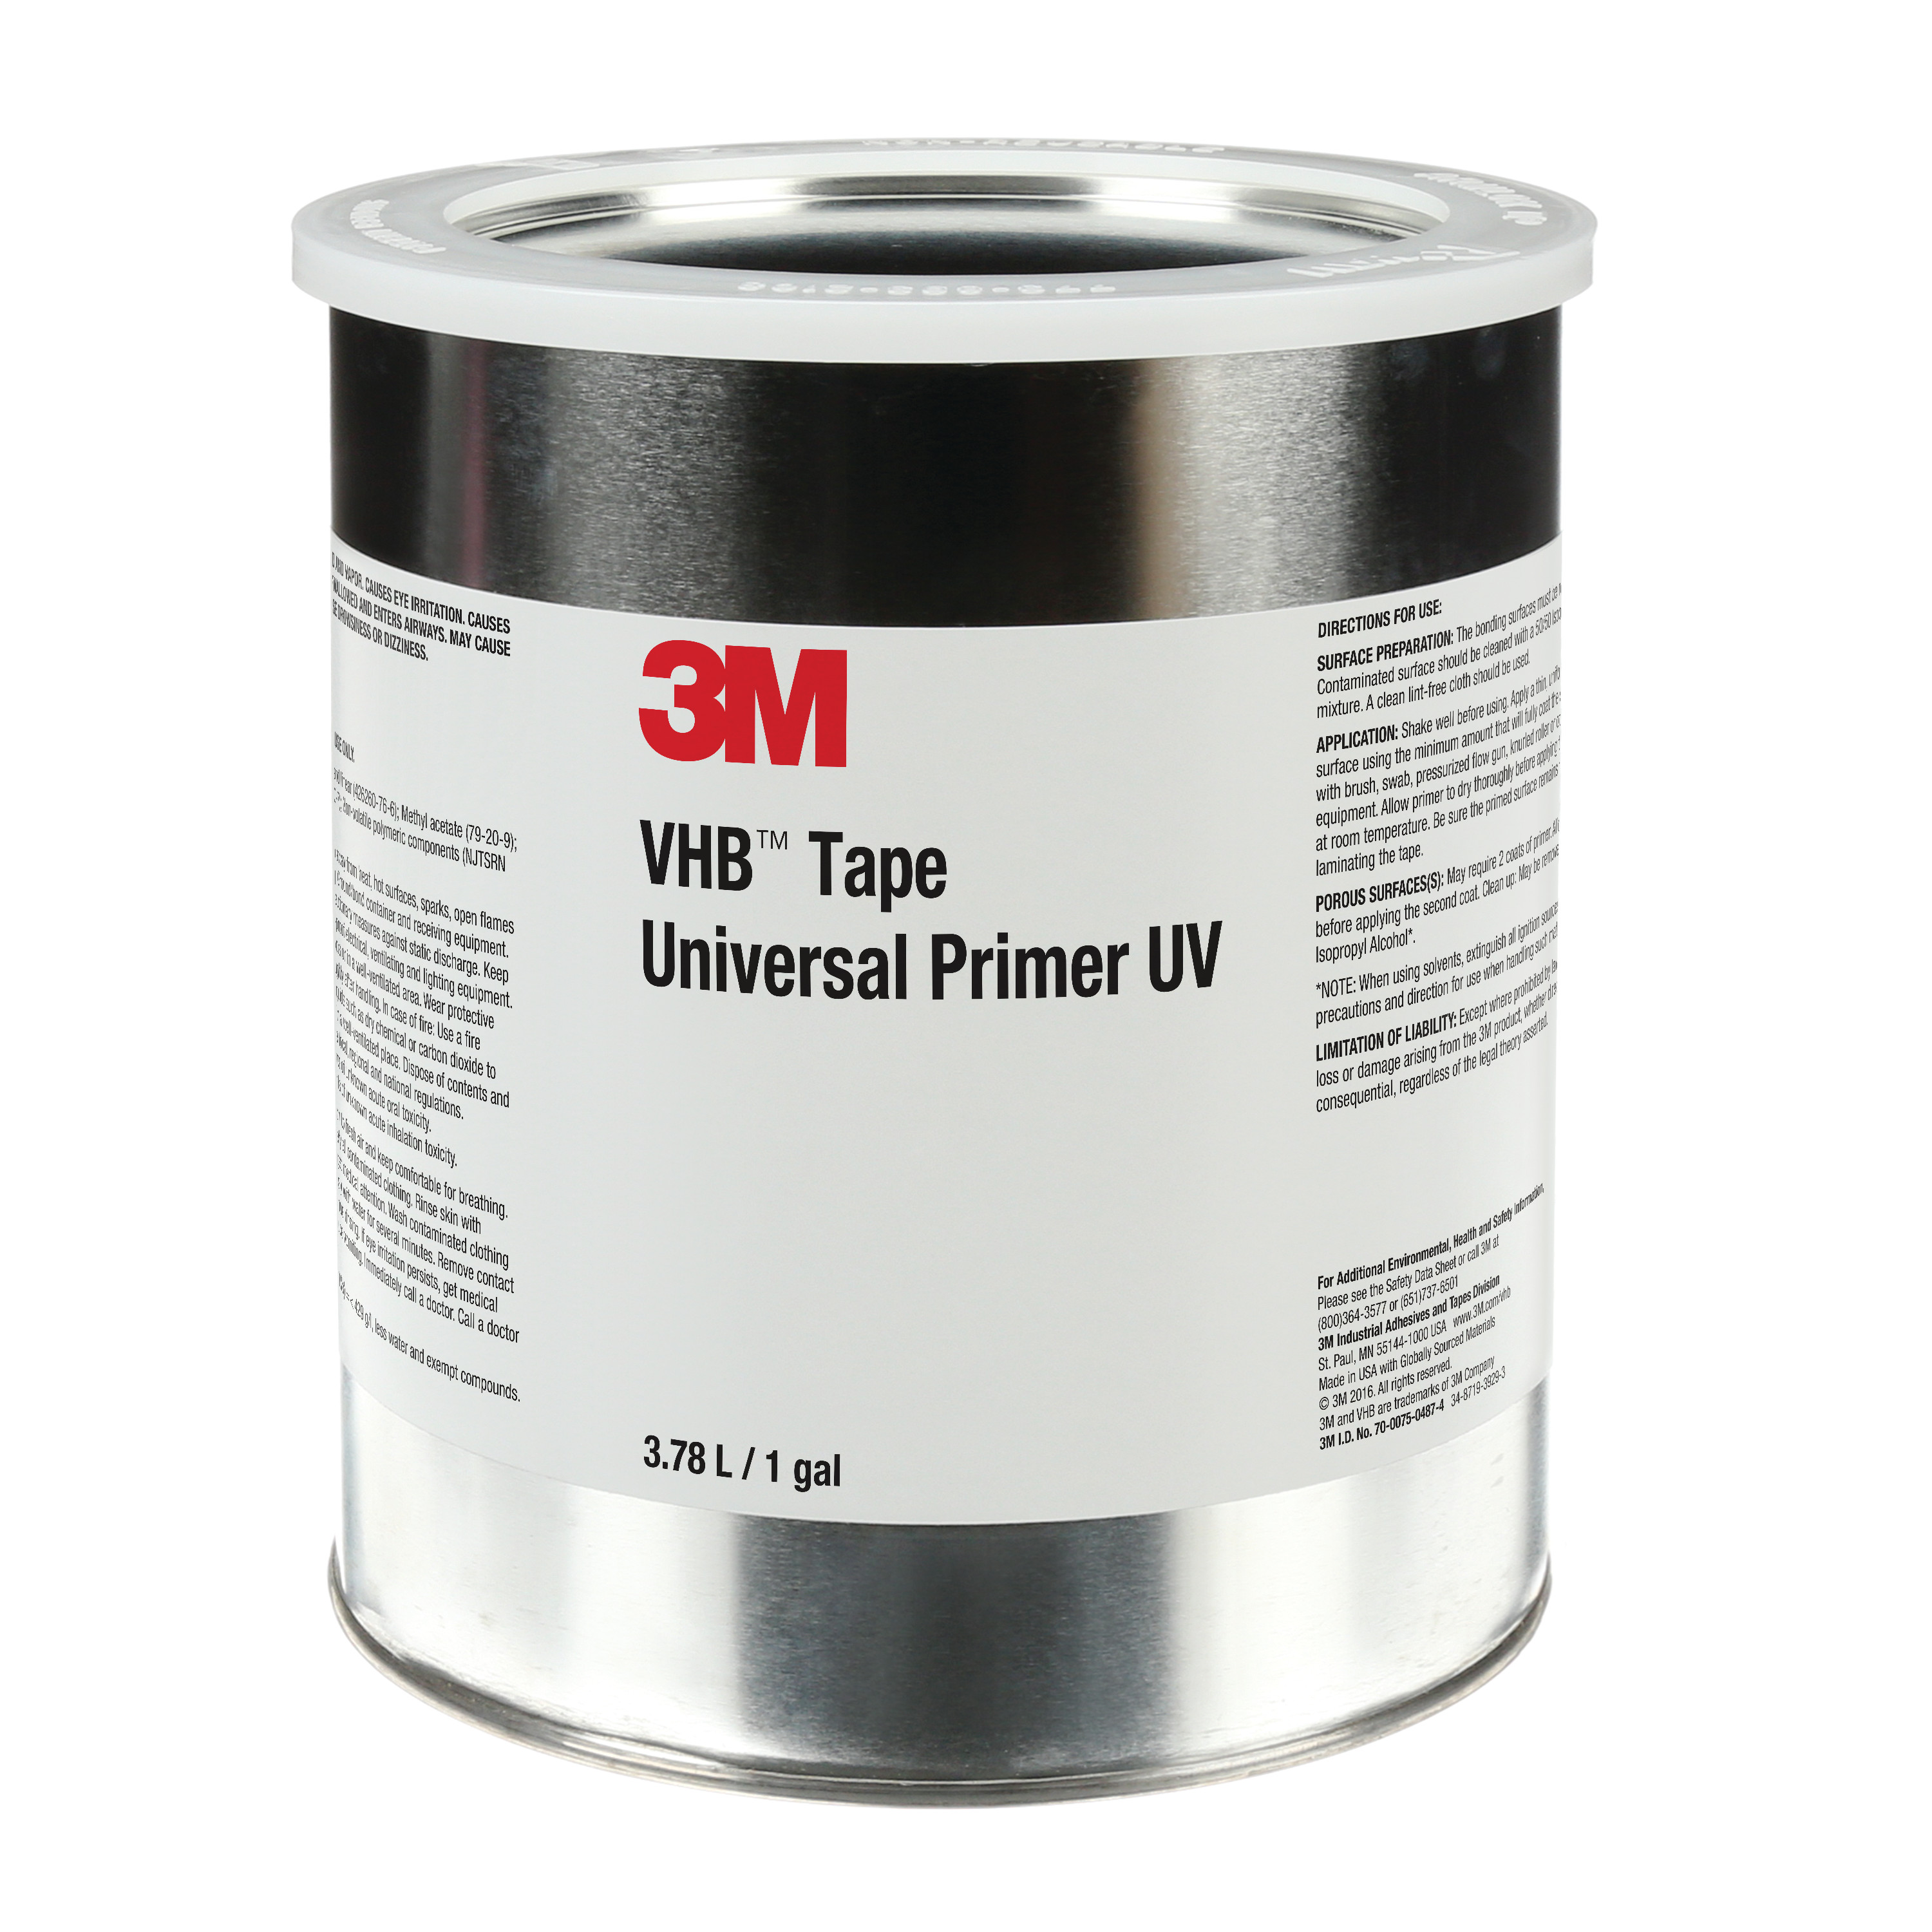 3M™ VHB™ Tape Universal Primer UV, Clear, 1 Gallon Drum (Can), 4 per
case